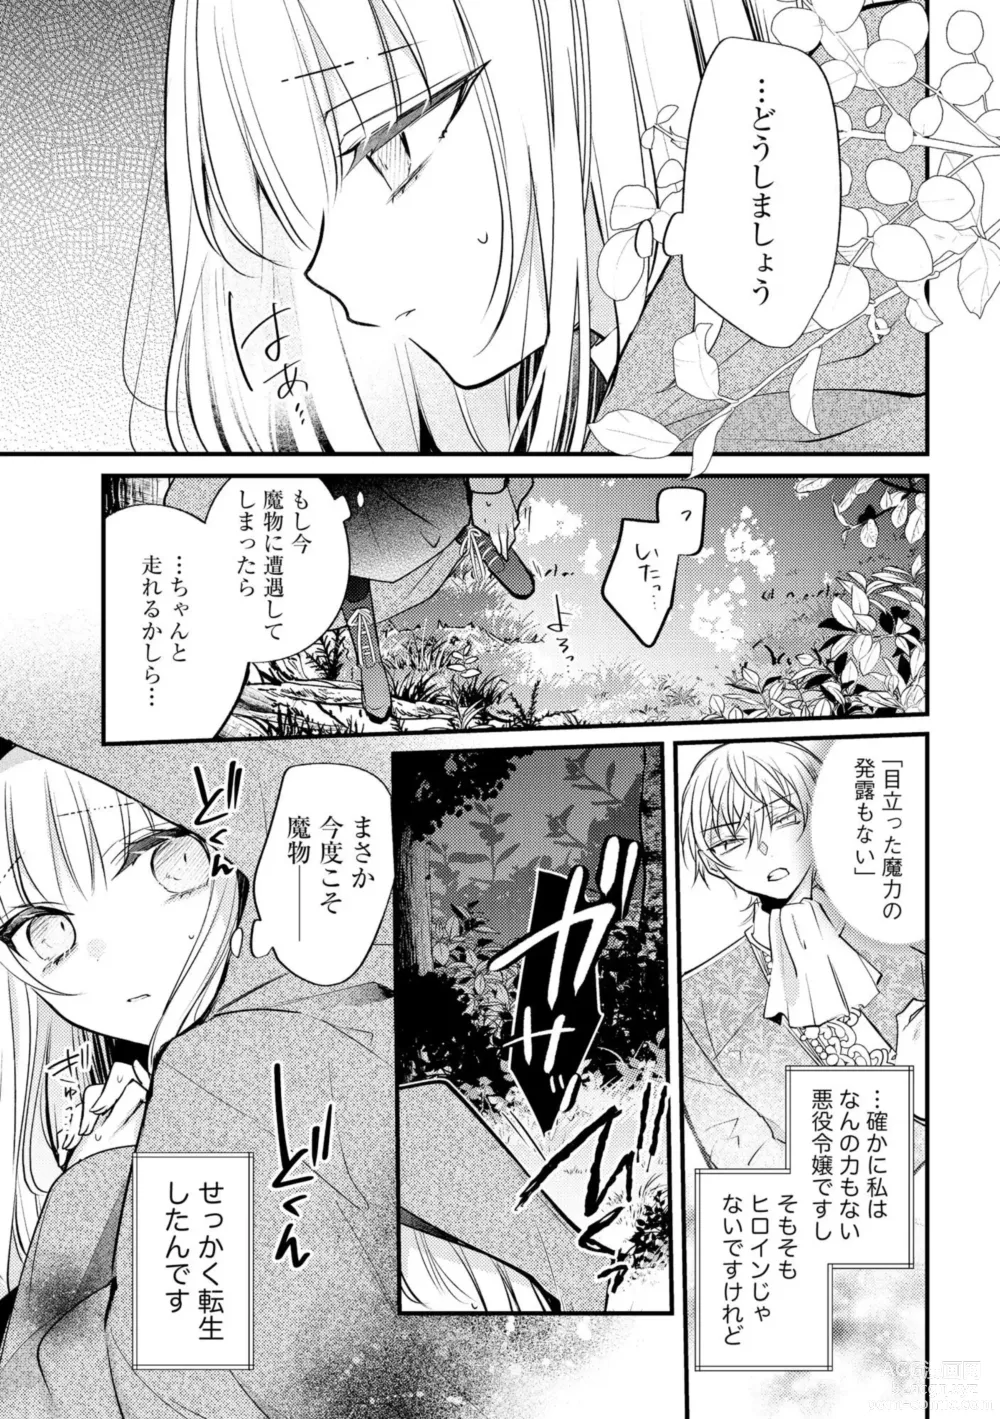 Page 15 of manga Akuyaku Reijou to Kyuuketsu Ouji no Dekiai Keiyaku Bad End ￫ Kenzoku Route no Amai Yotogi 1